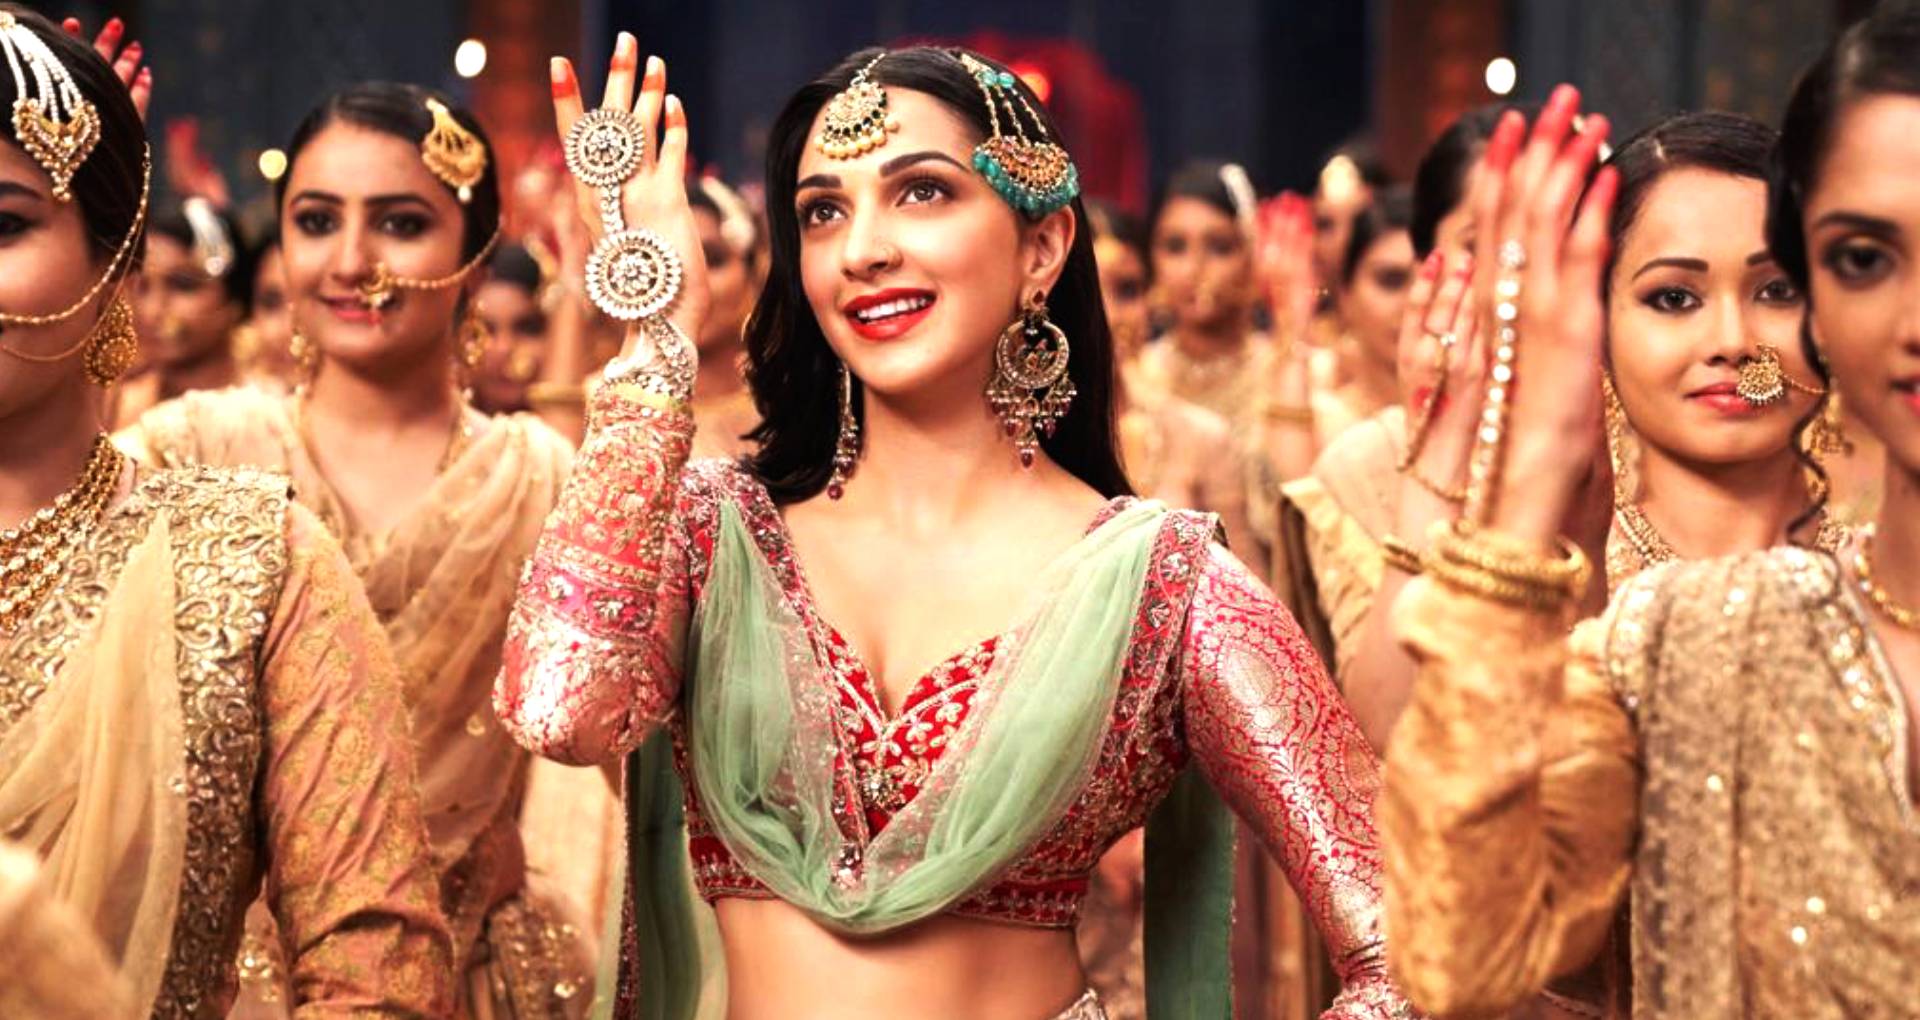 Nora Fatehi, Kiara Advani, Disha Patani: Hottest Dance Moments To Make You Sweat 3